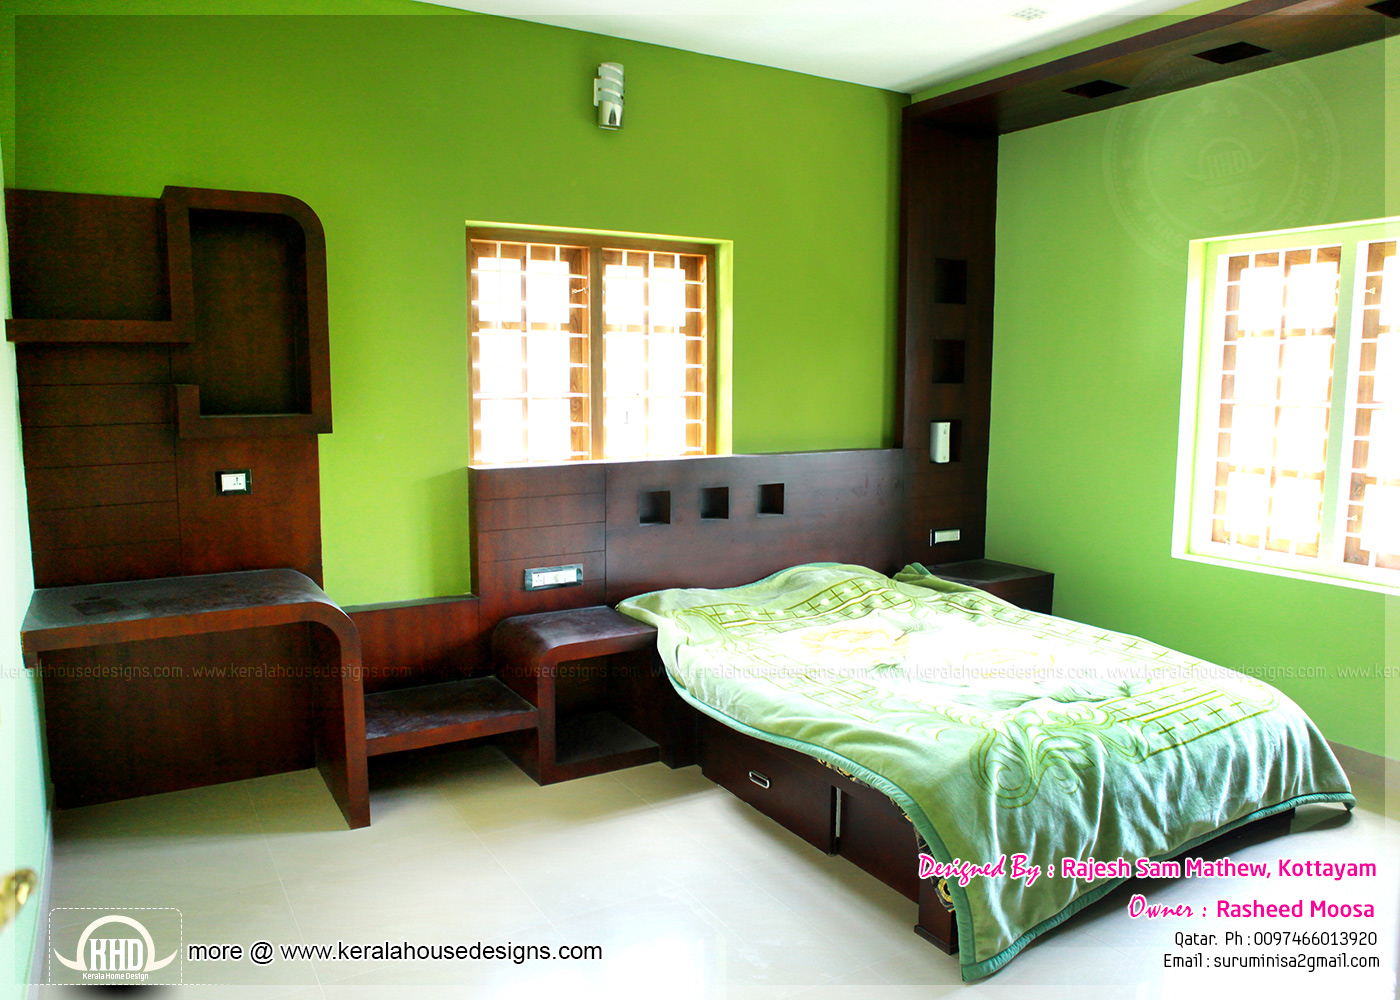 Kerala interior design with photos - Kerala home design 